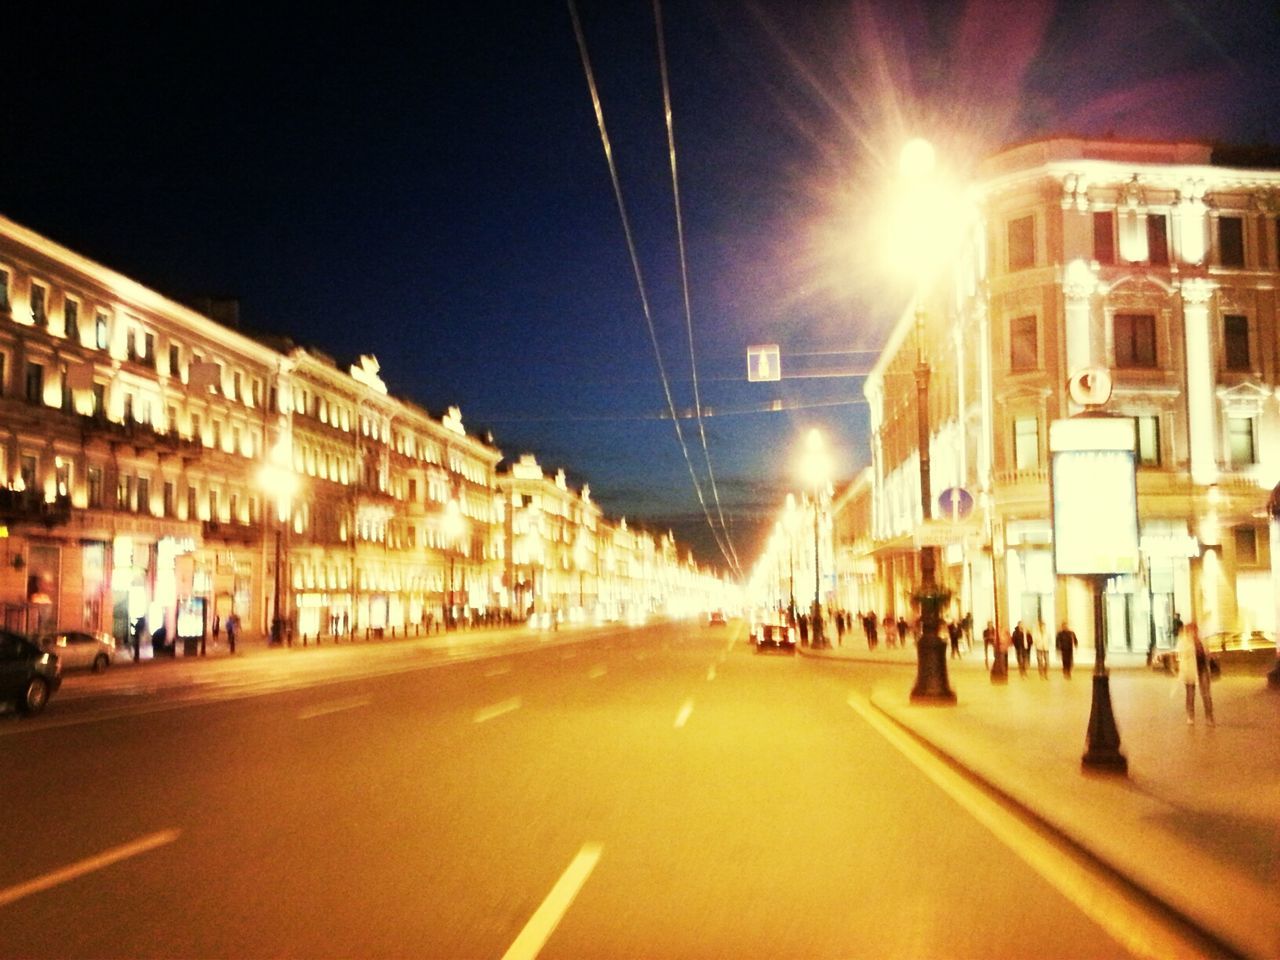 ILLUMINATED STREET LIGHT ON CITY STREET